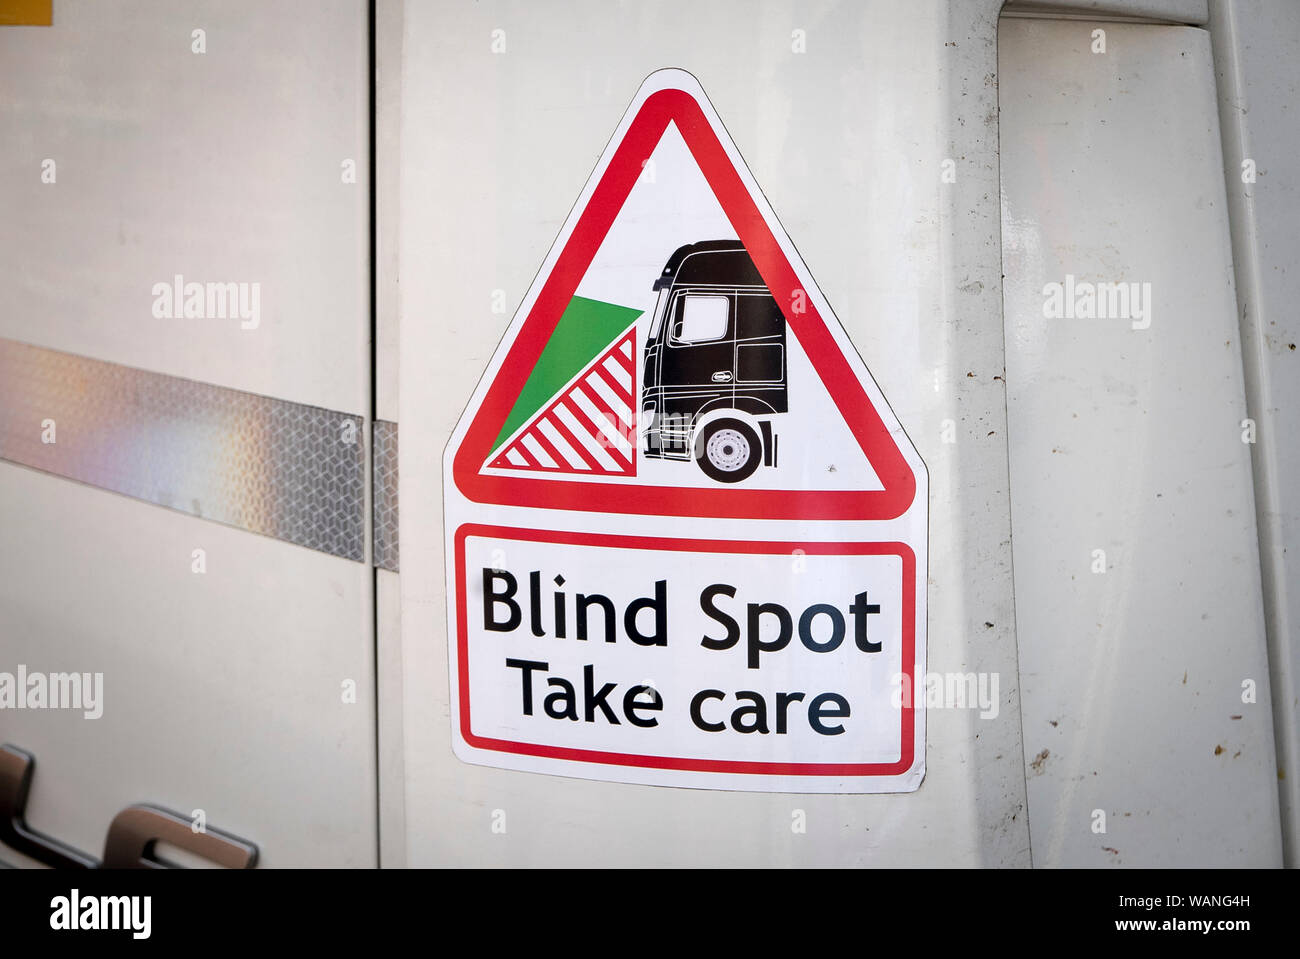 Signe et symbole d'avertissement concernant les limites de vision du conducteur de camion lorsque les manœuvres entre les piétons dans les villes Banque D'Images